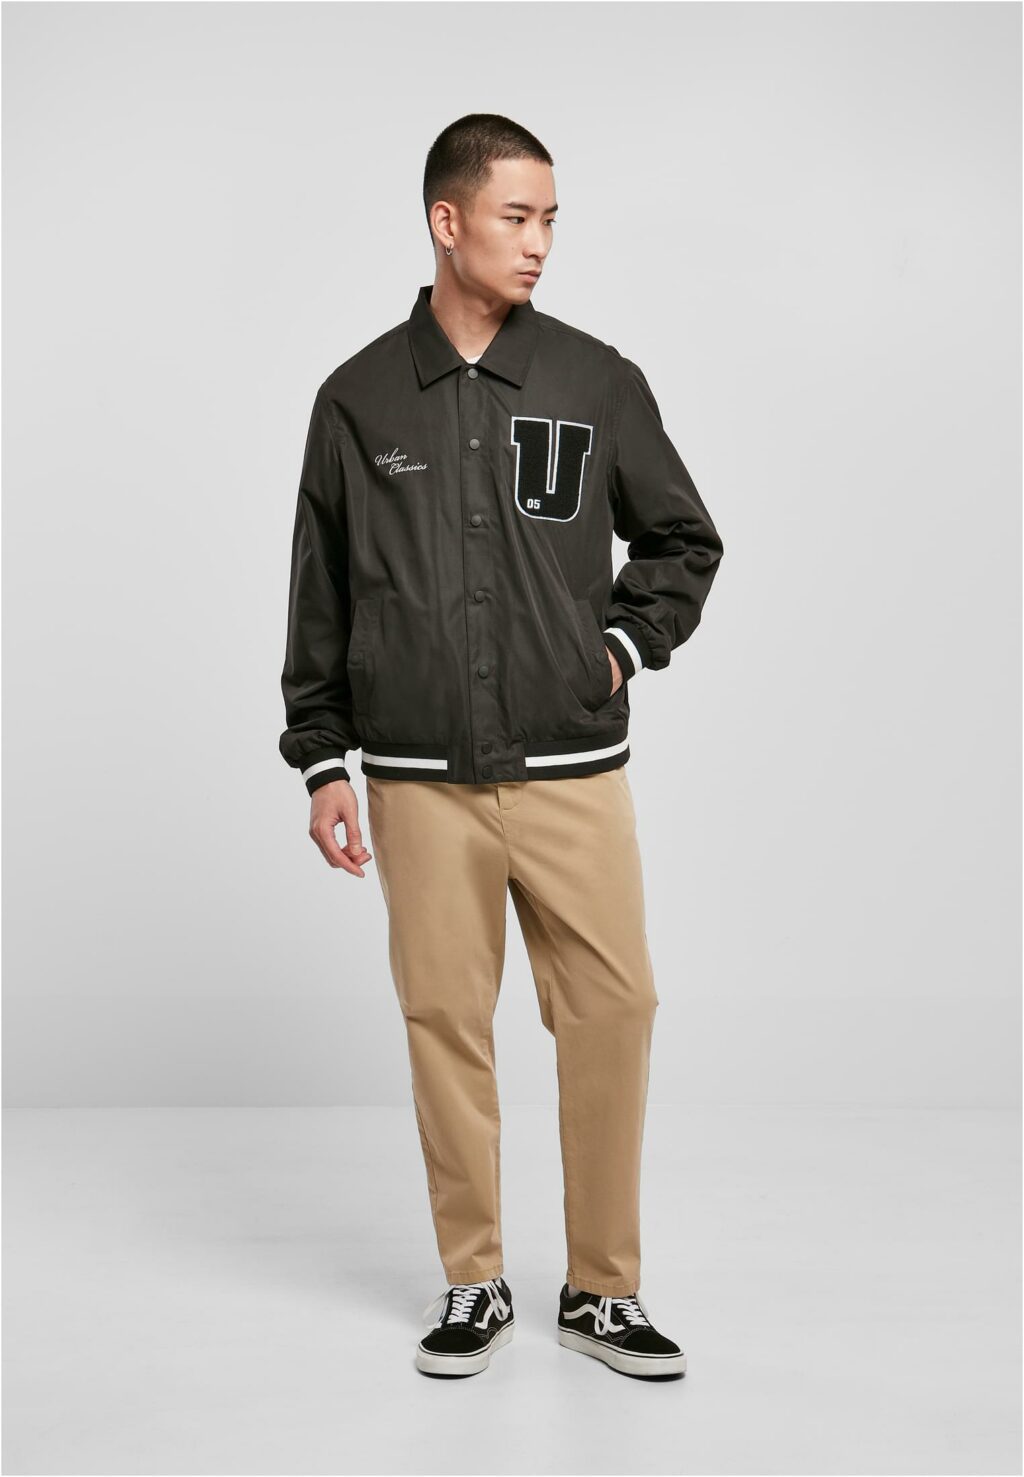 Urban Classics Sports College Jacket black TB5904